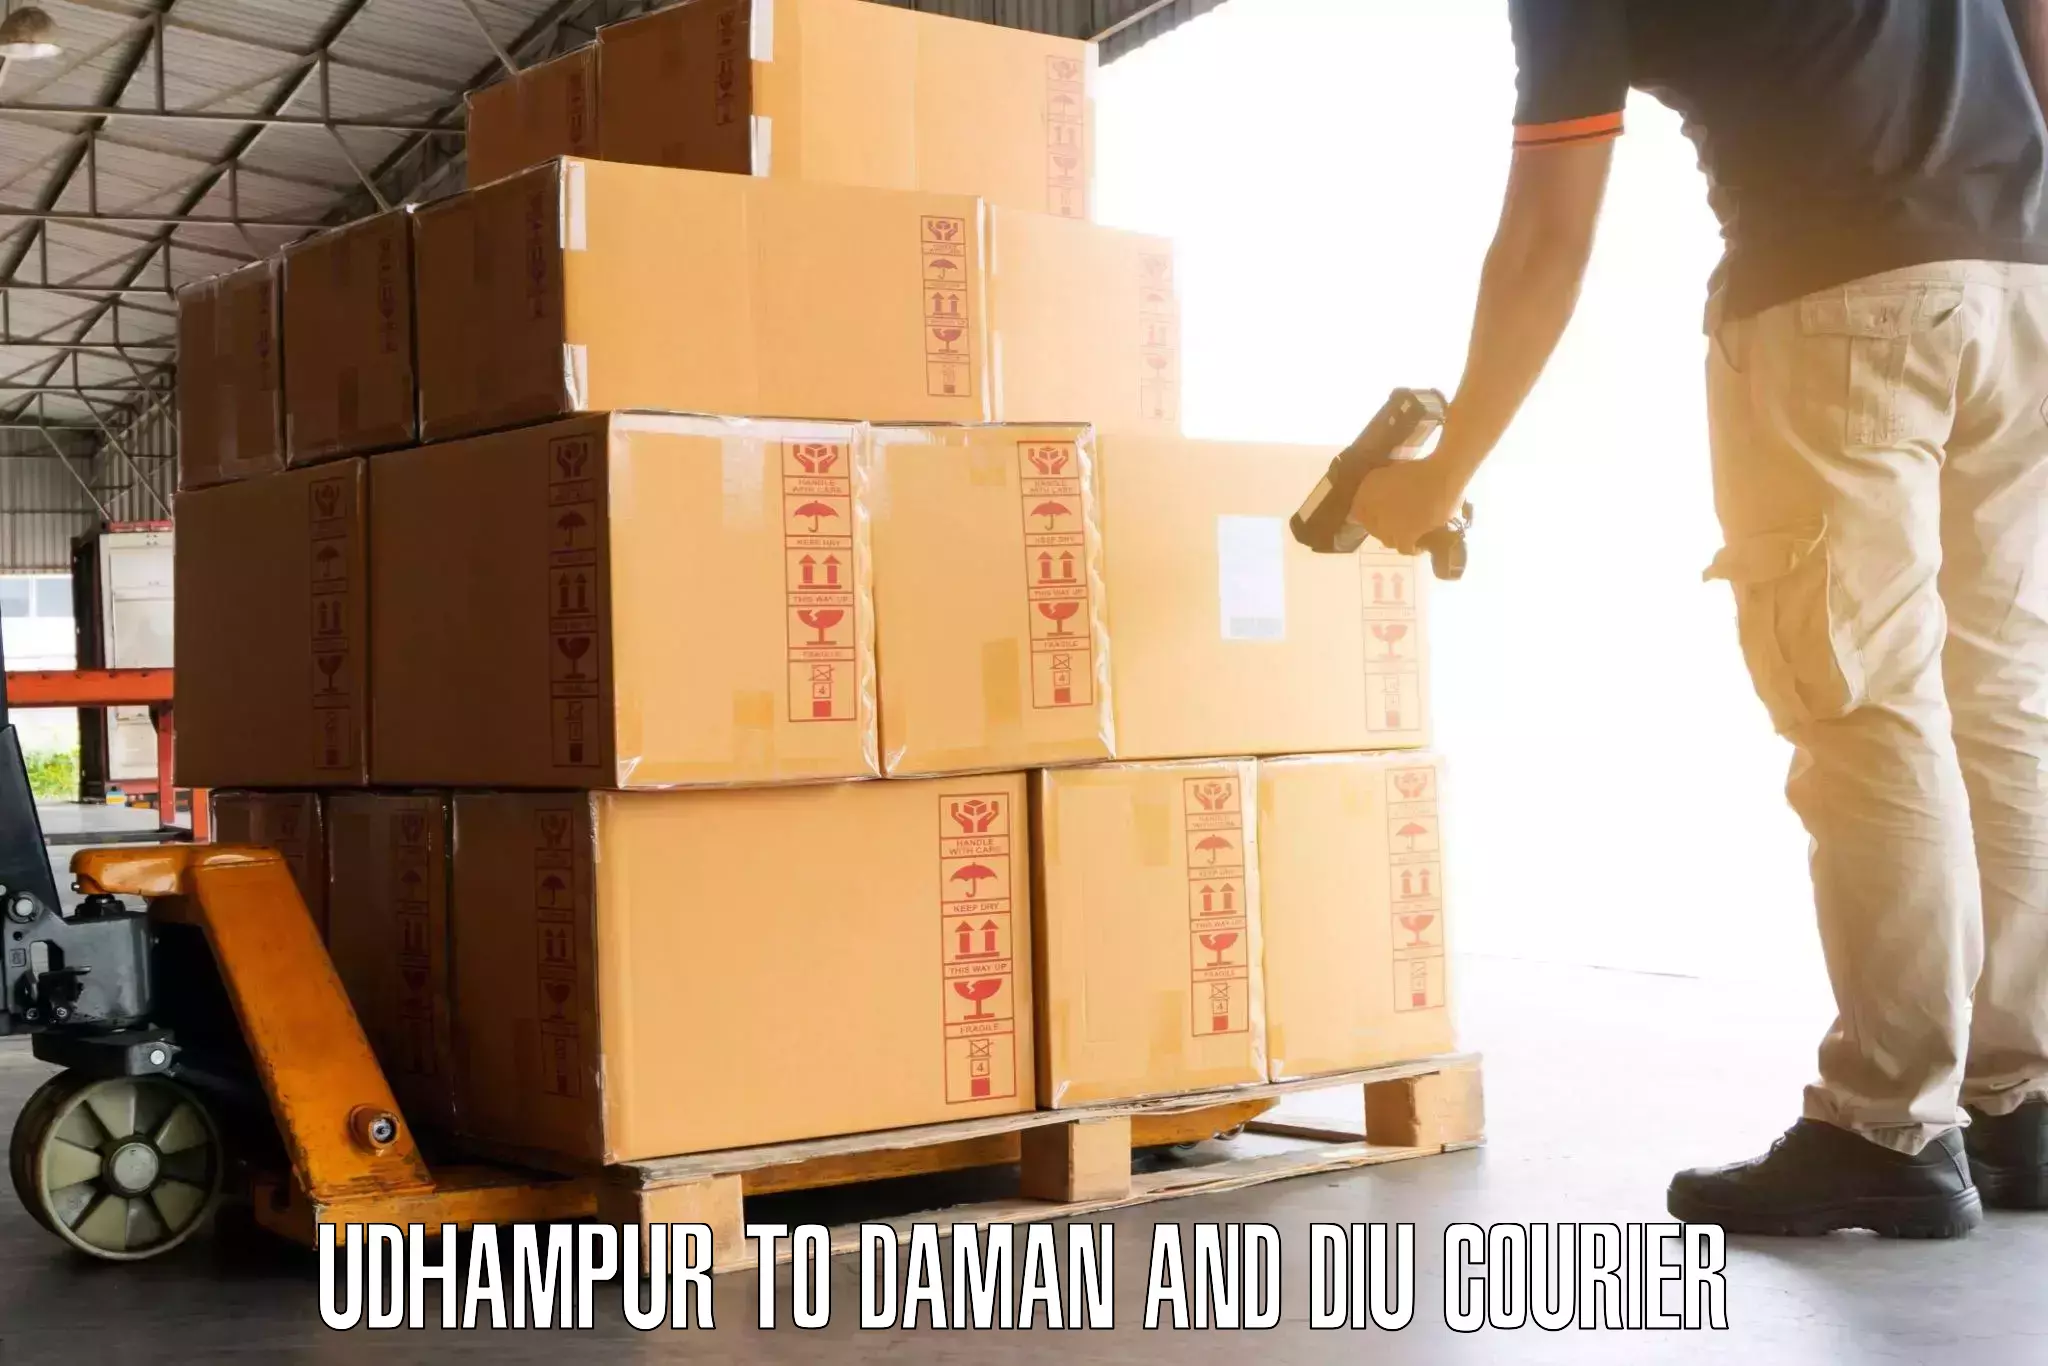 Luggage transport rates Udhampur to Daman